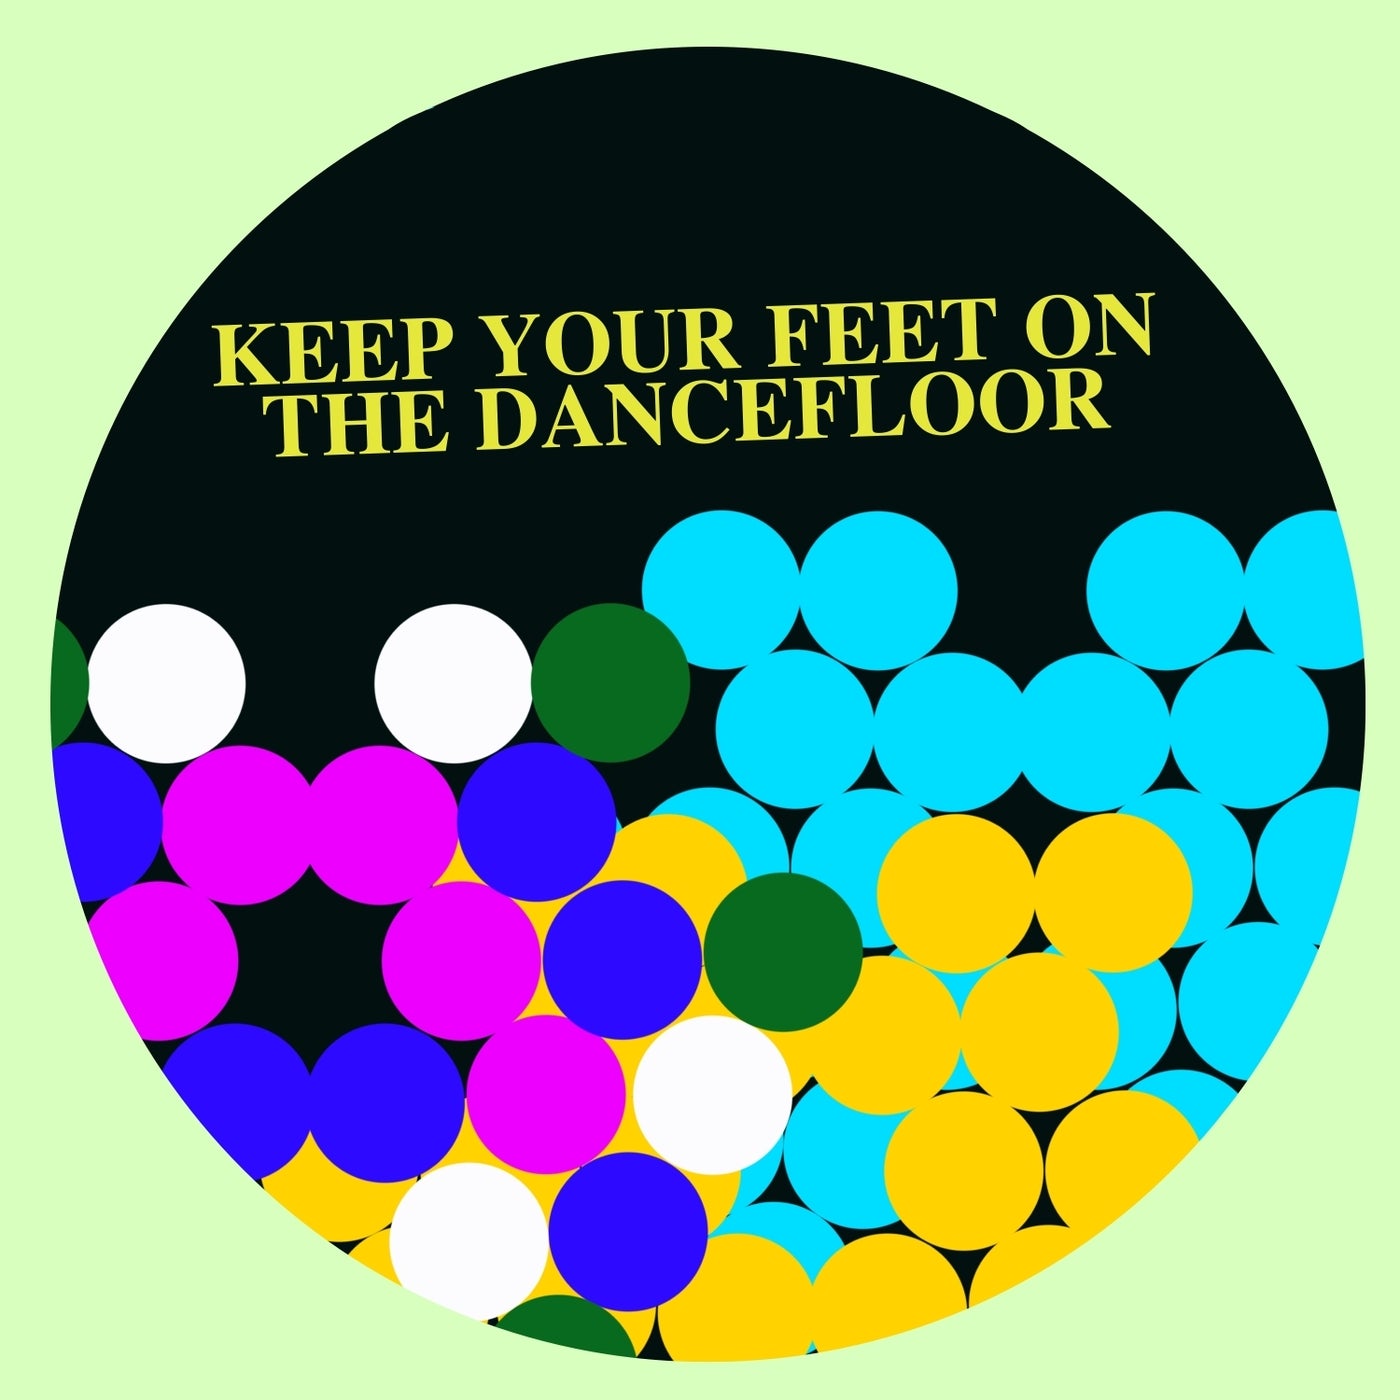 Keep Your Feet on the Dancefloor